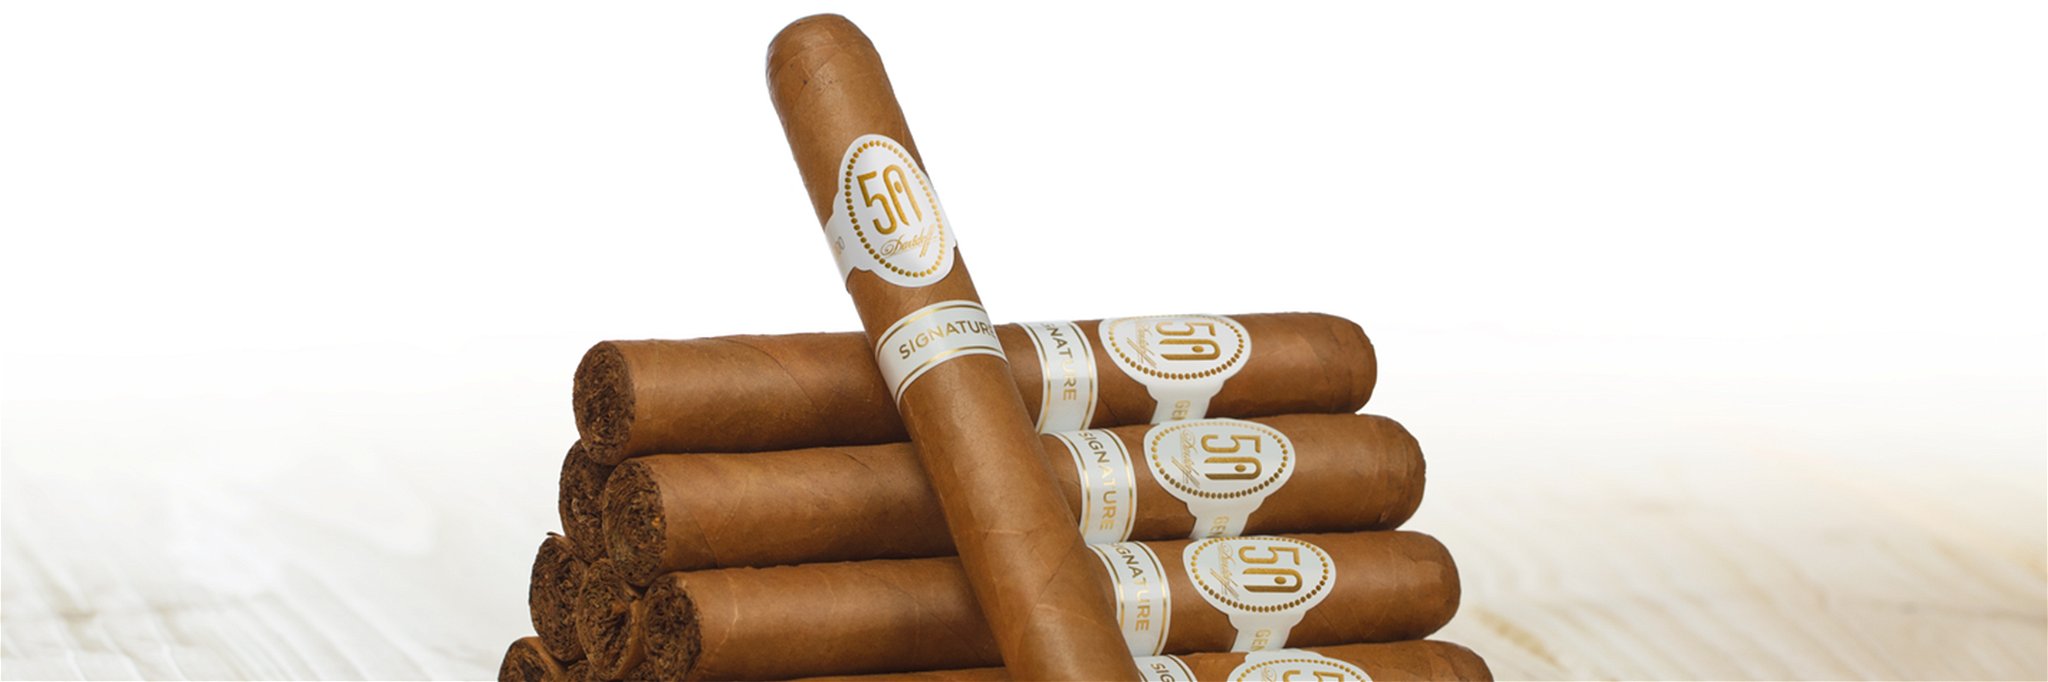 Bereits seit 1968 ziert der legendäre ovale weiße Zigarrenring die Kreationen von Davidoff.